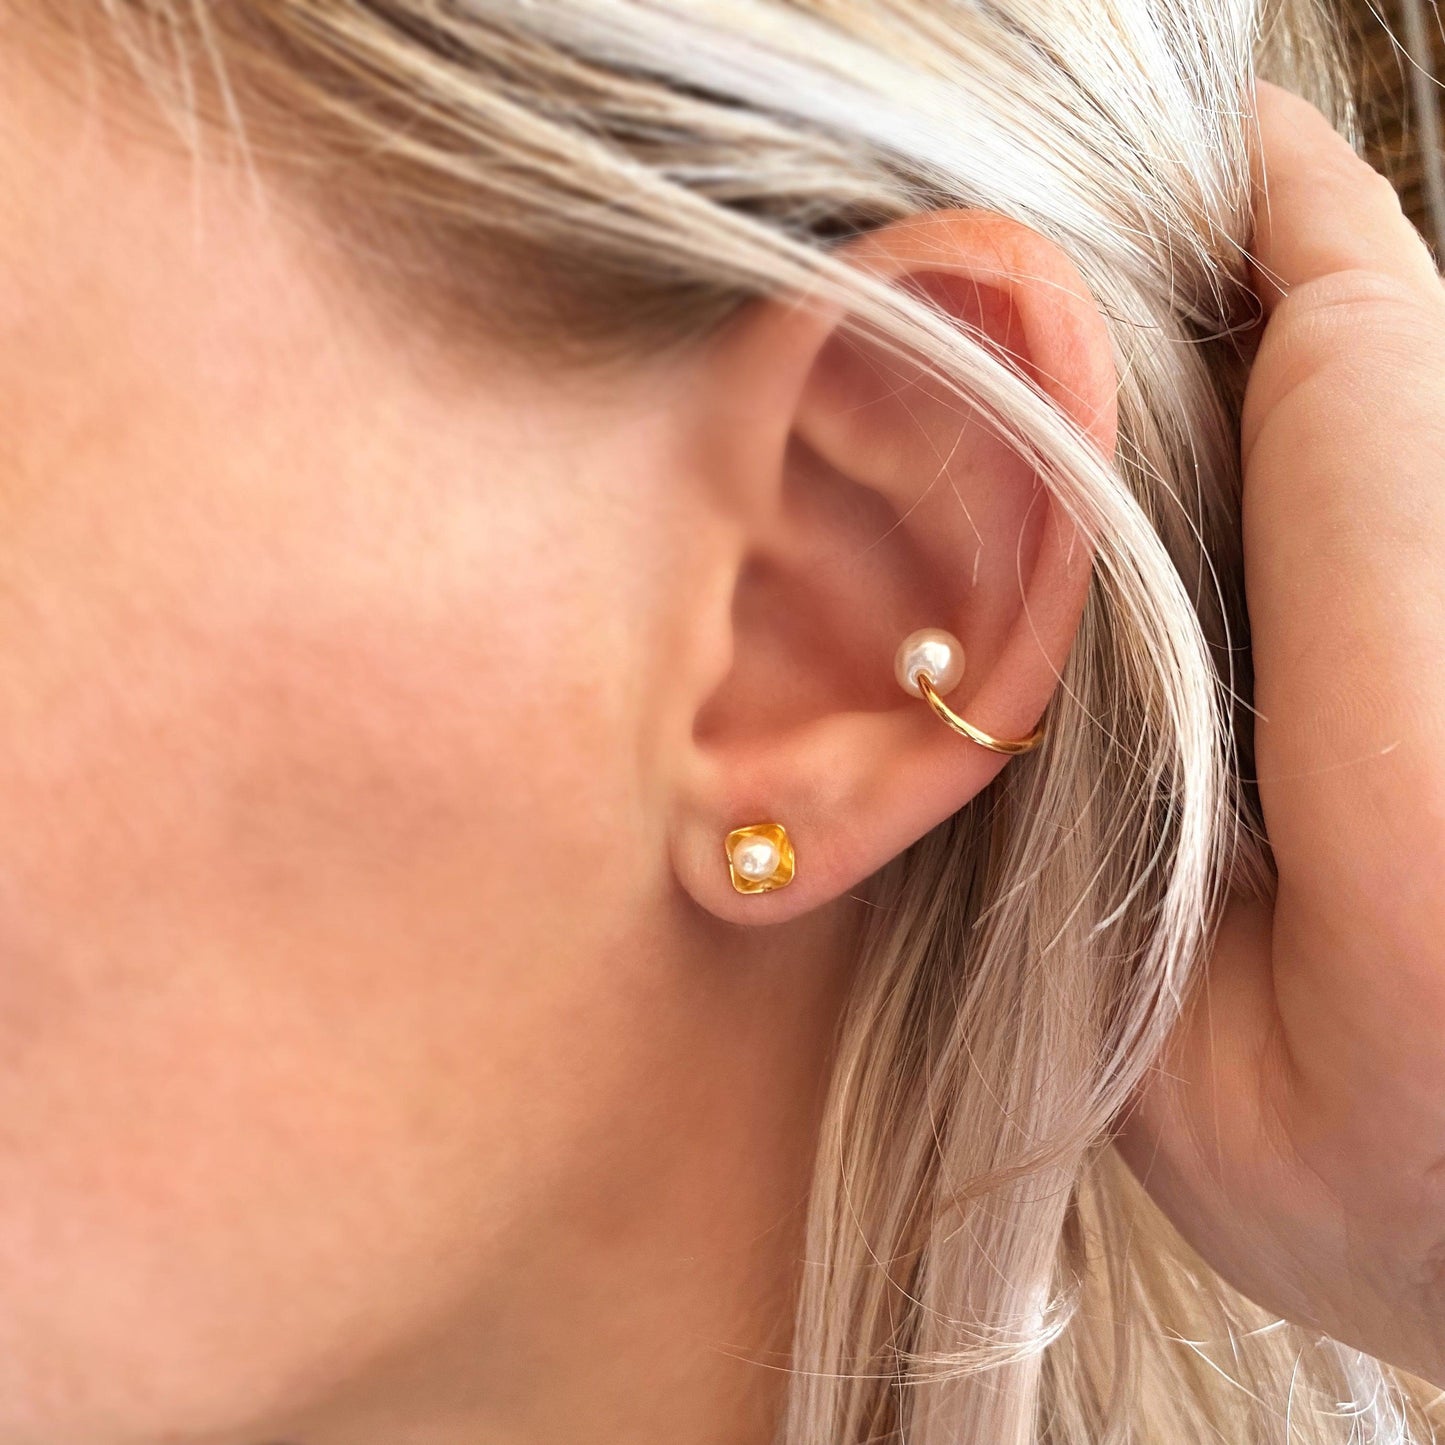 GoldFi Delicate Pearl Ear Cuff in 18k Gold Filled